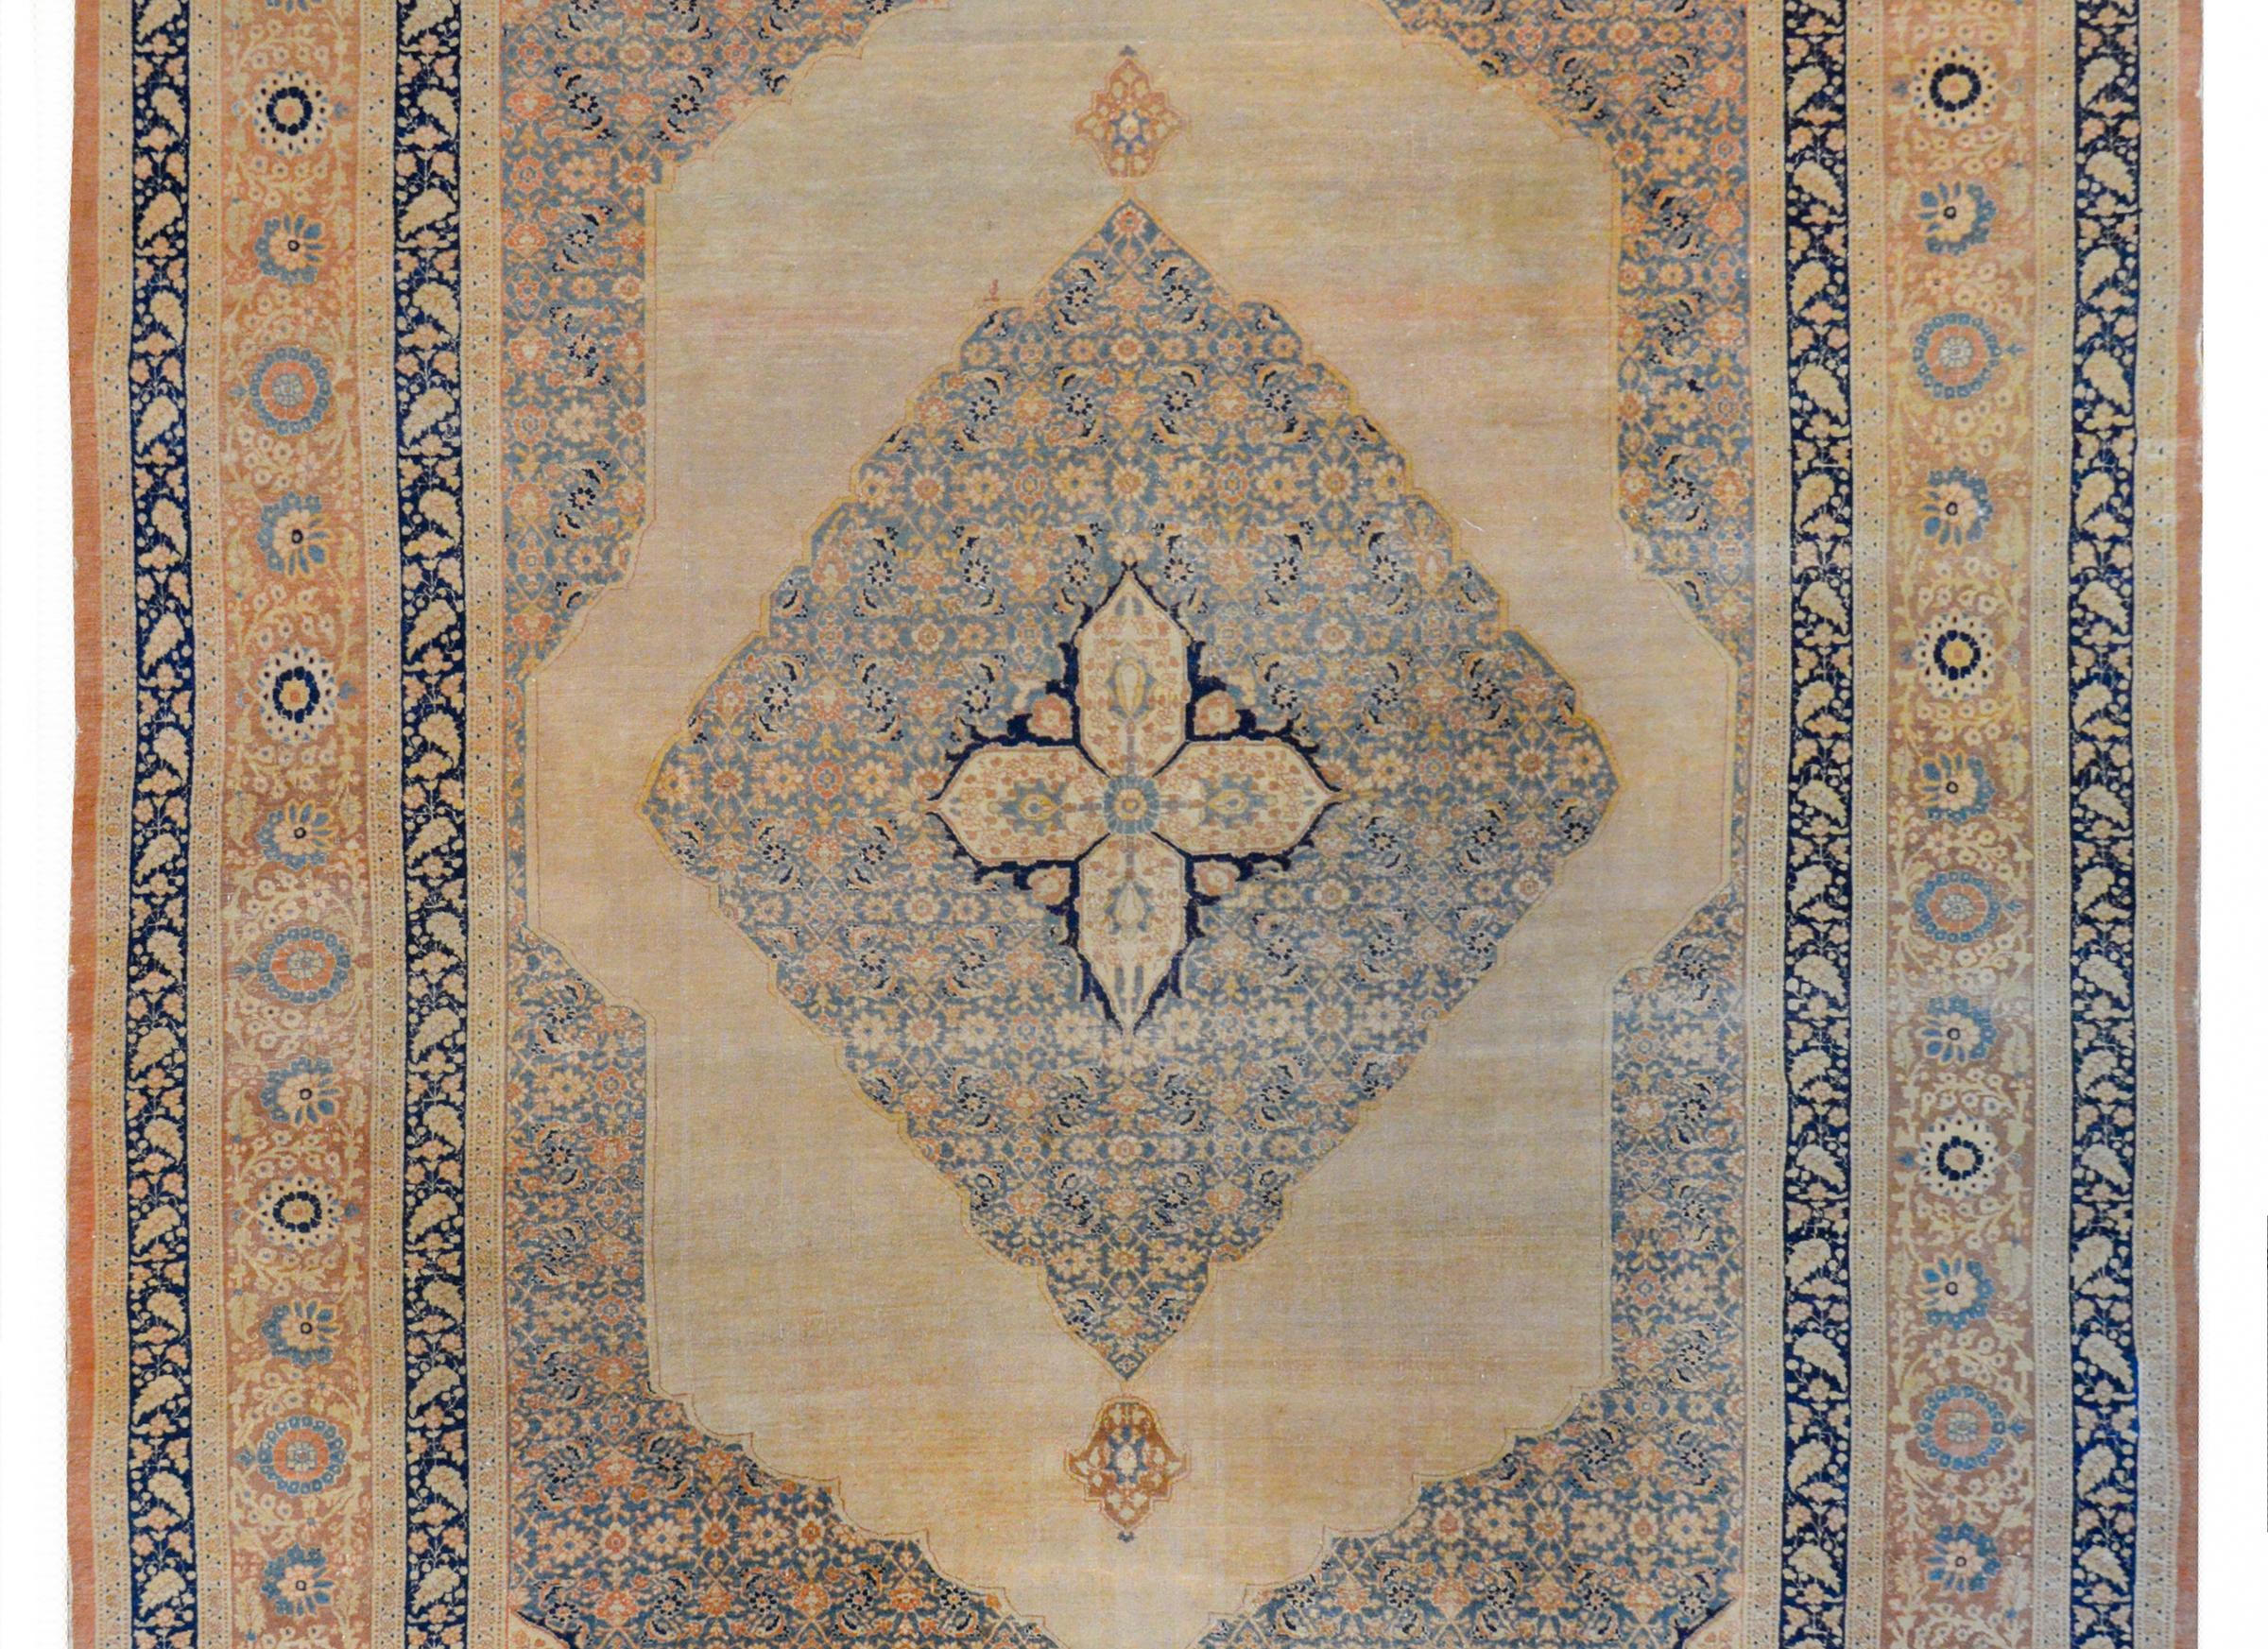 Ein unglaublicher persischer Hadschi Jalili-Tabriz-Teppich aus dem frühen 20. Jahrhundert mit einem vierlappigen Medaillon auf einem größeren Rautenmedaillon mit einem Blatt- und Blumengittermuster, gewebt in hellem Creme, Gold, Rost und hellem